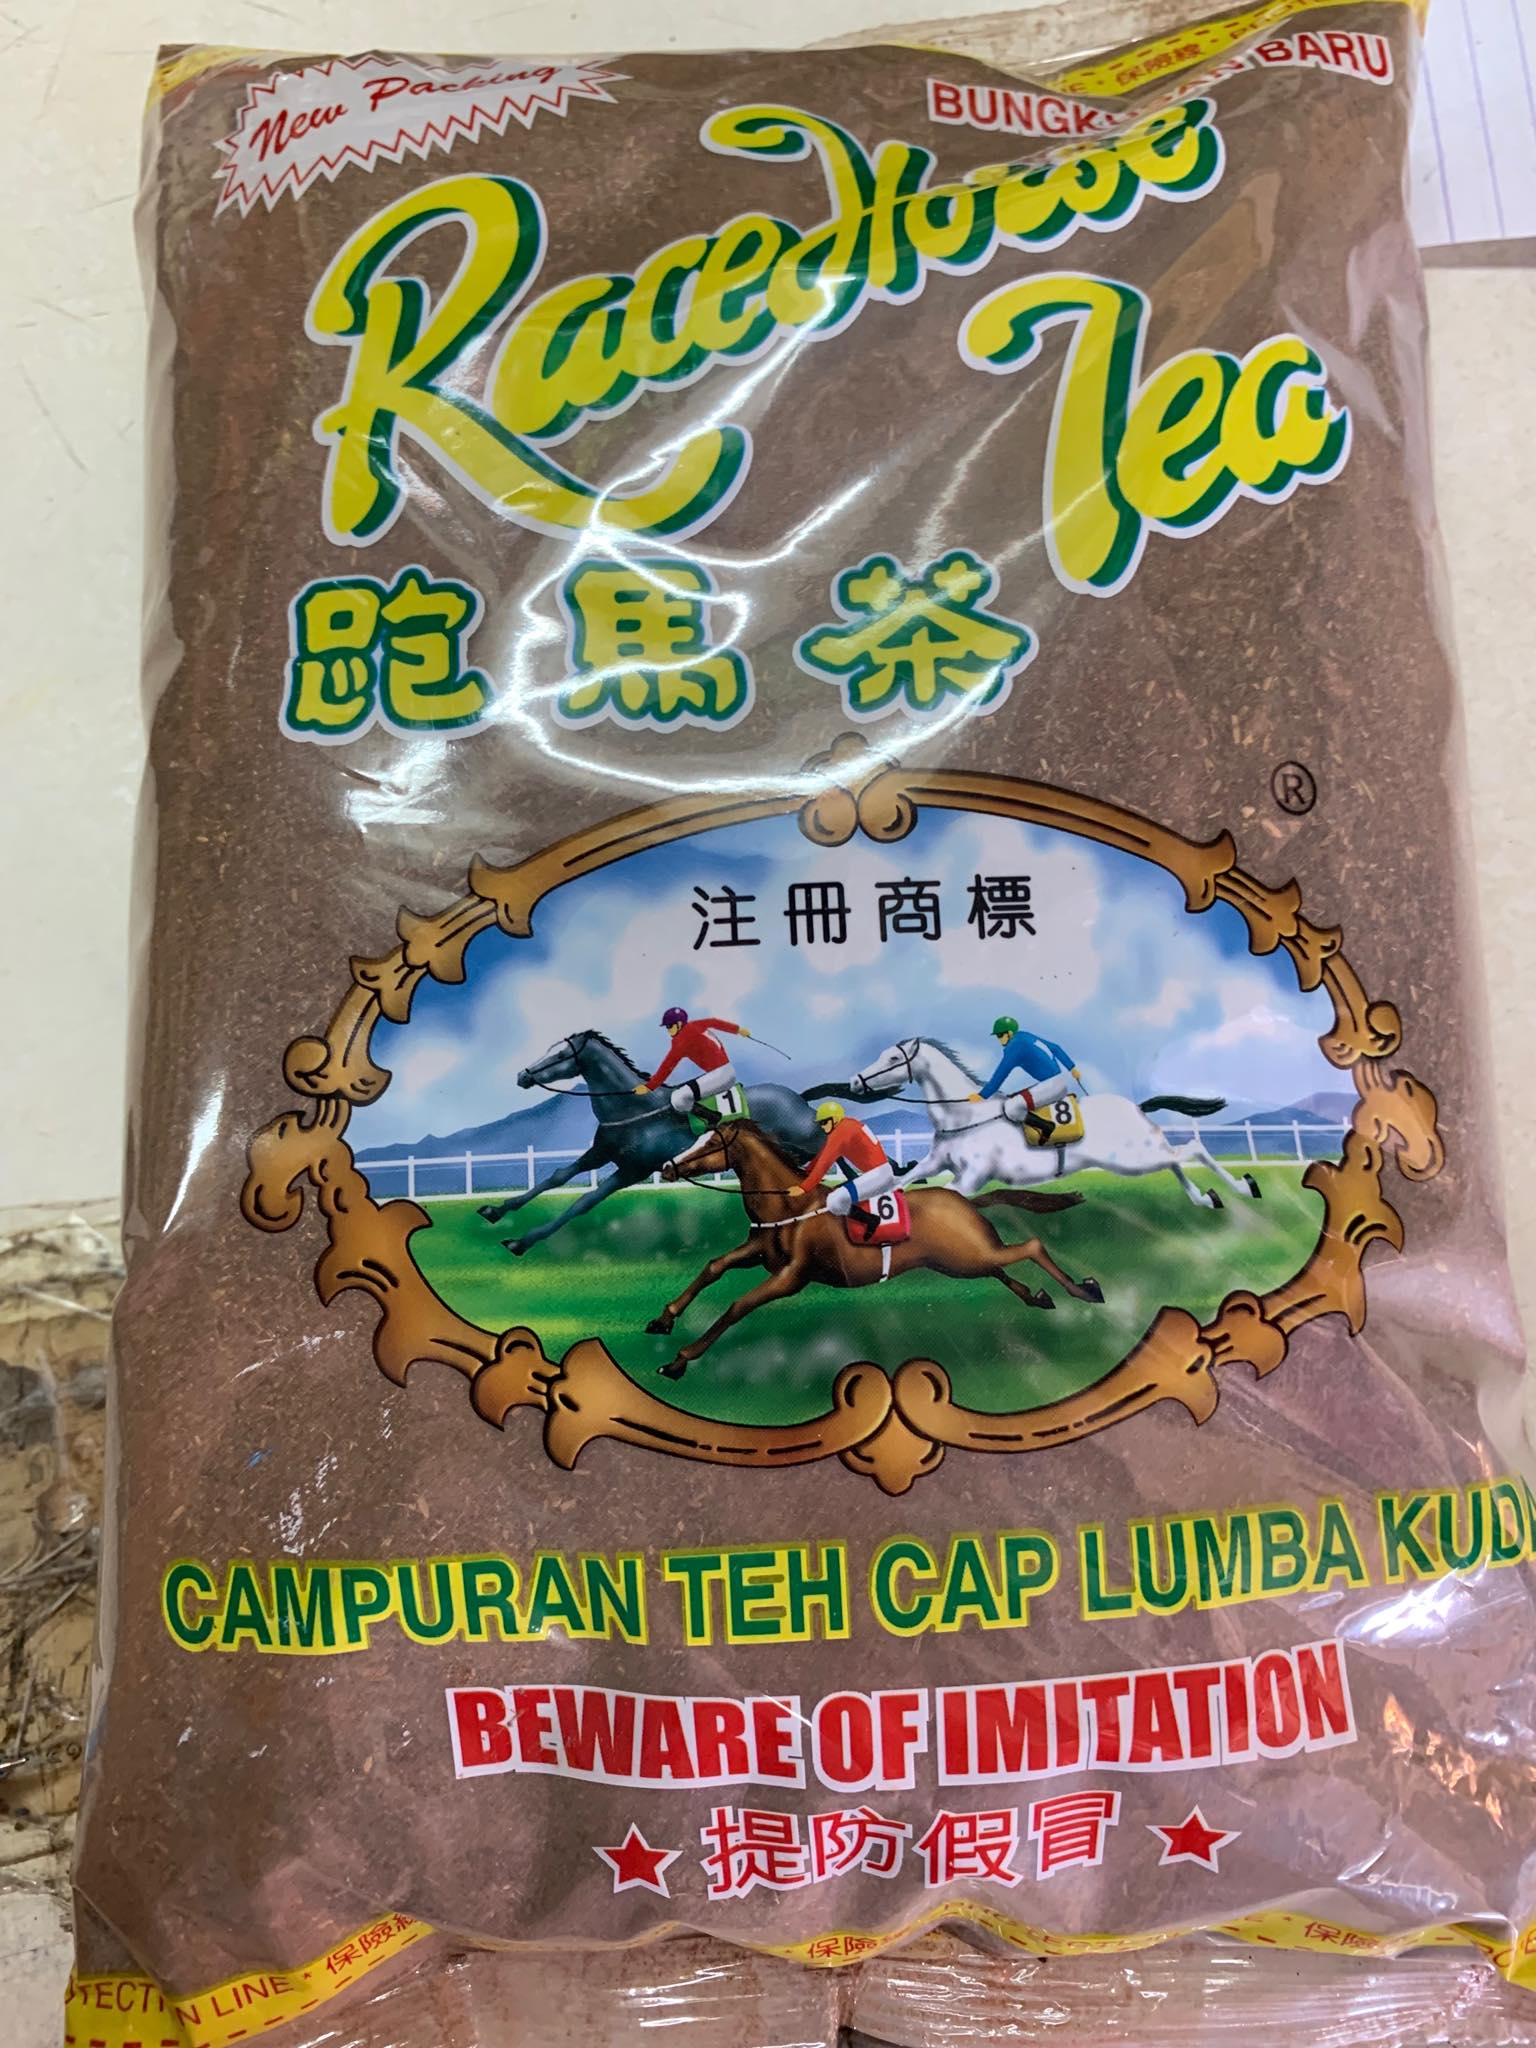 ชาตราม้าแข่ง ชามาเลย์ Race Horse Tea ชาม้า Chatai  ชาตราม้า ขี่ม้าเหลือง ขนาด1กิโลกรัม ของแท้100% ชาชัก ชาเย็น ชาใต้